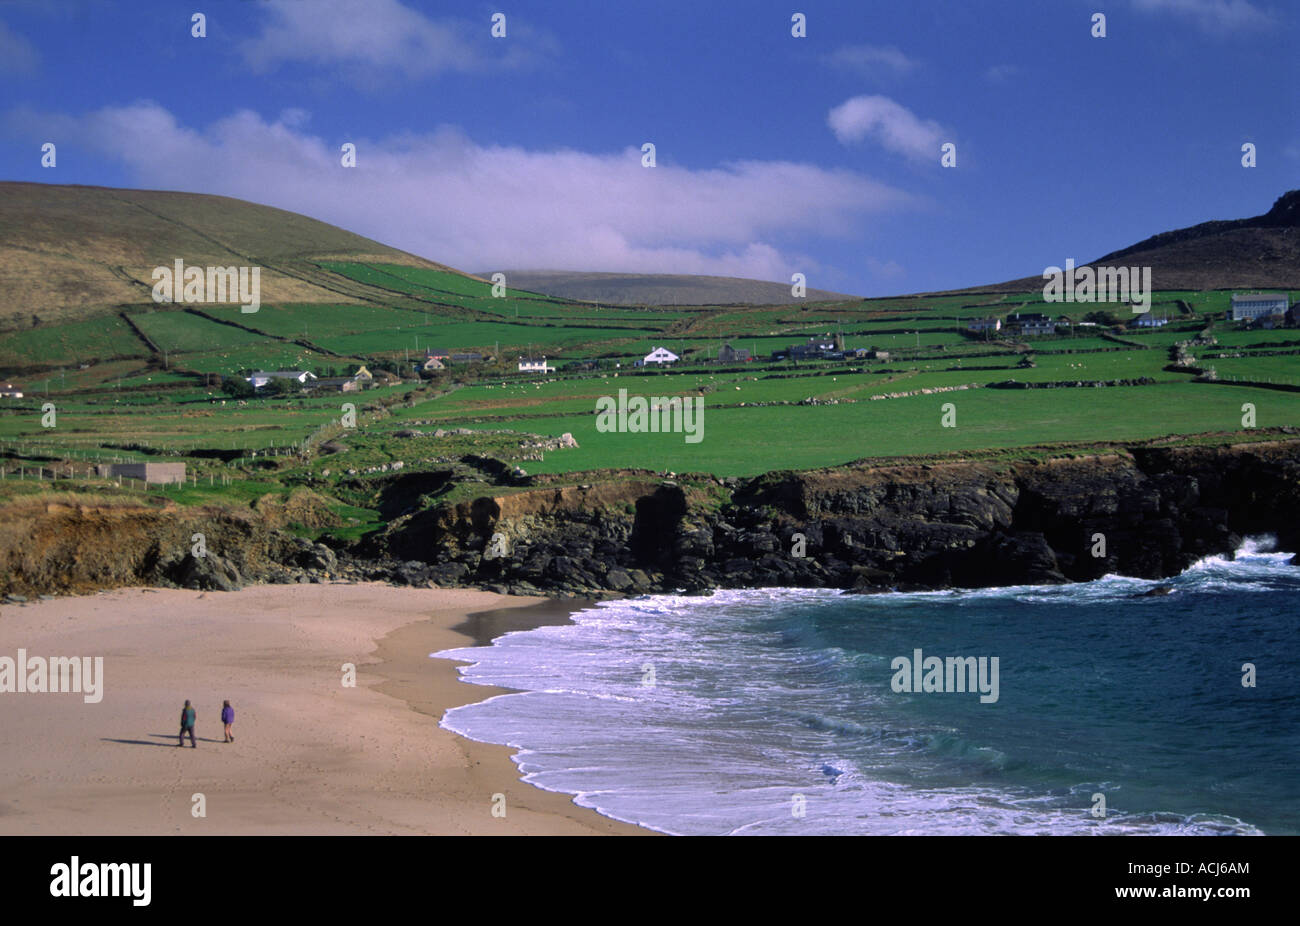 La gente camminare sulla spiaggia di Clogher, al di sotto del mosaico di campi verdi. Penisola di Dingle, nella contea di Kerry, Irlanda. Foto Stock